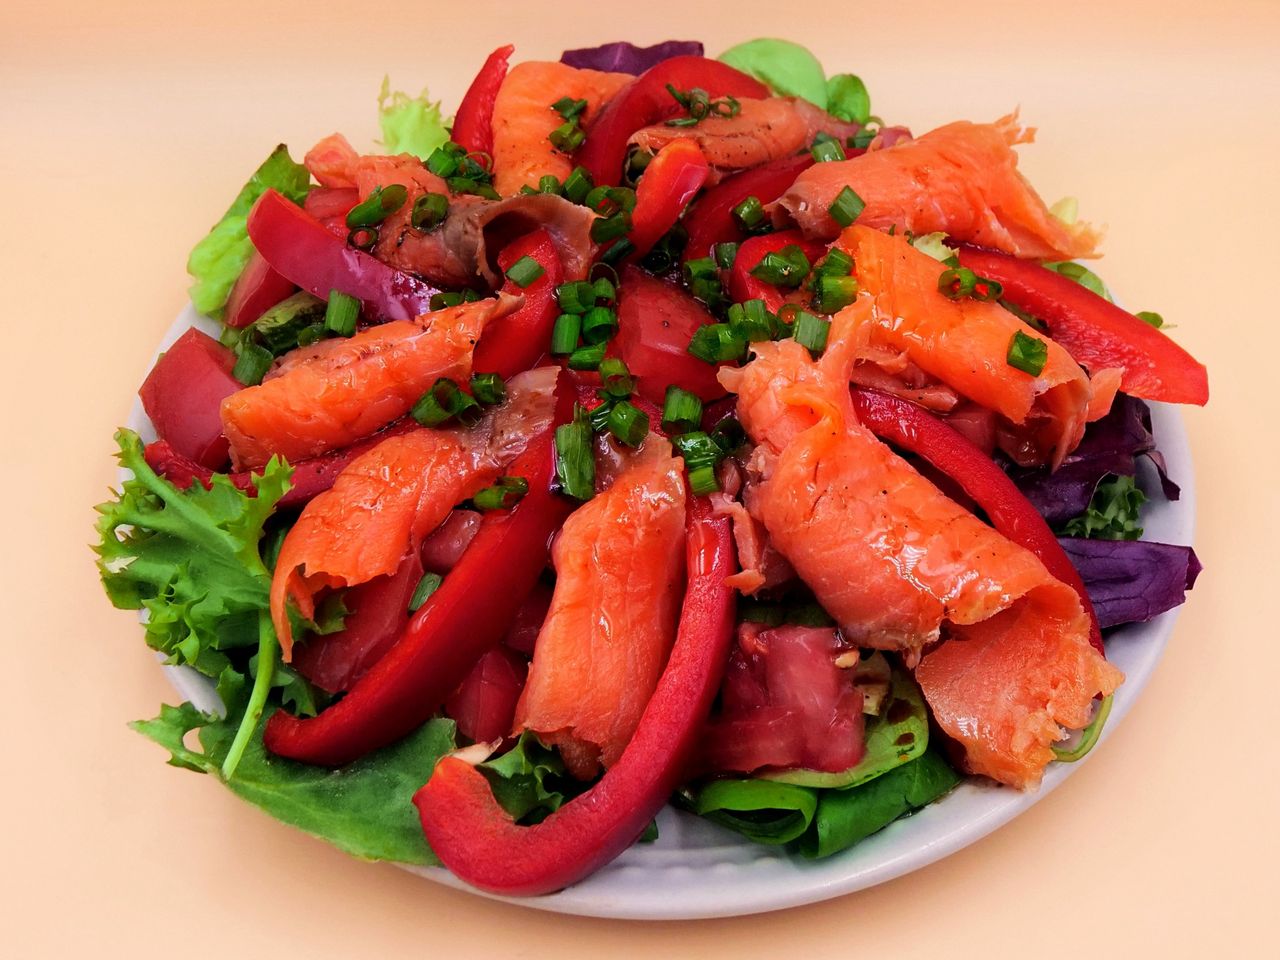 Salad with smoked salmon.